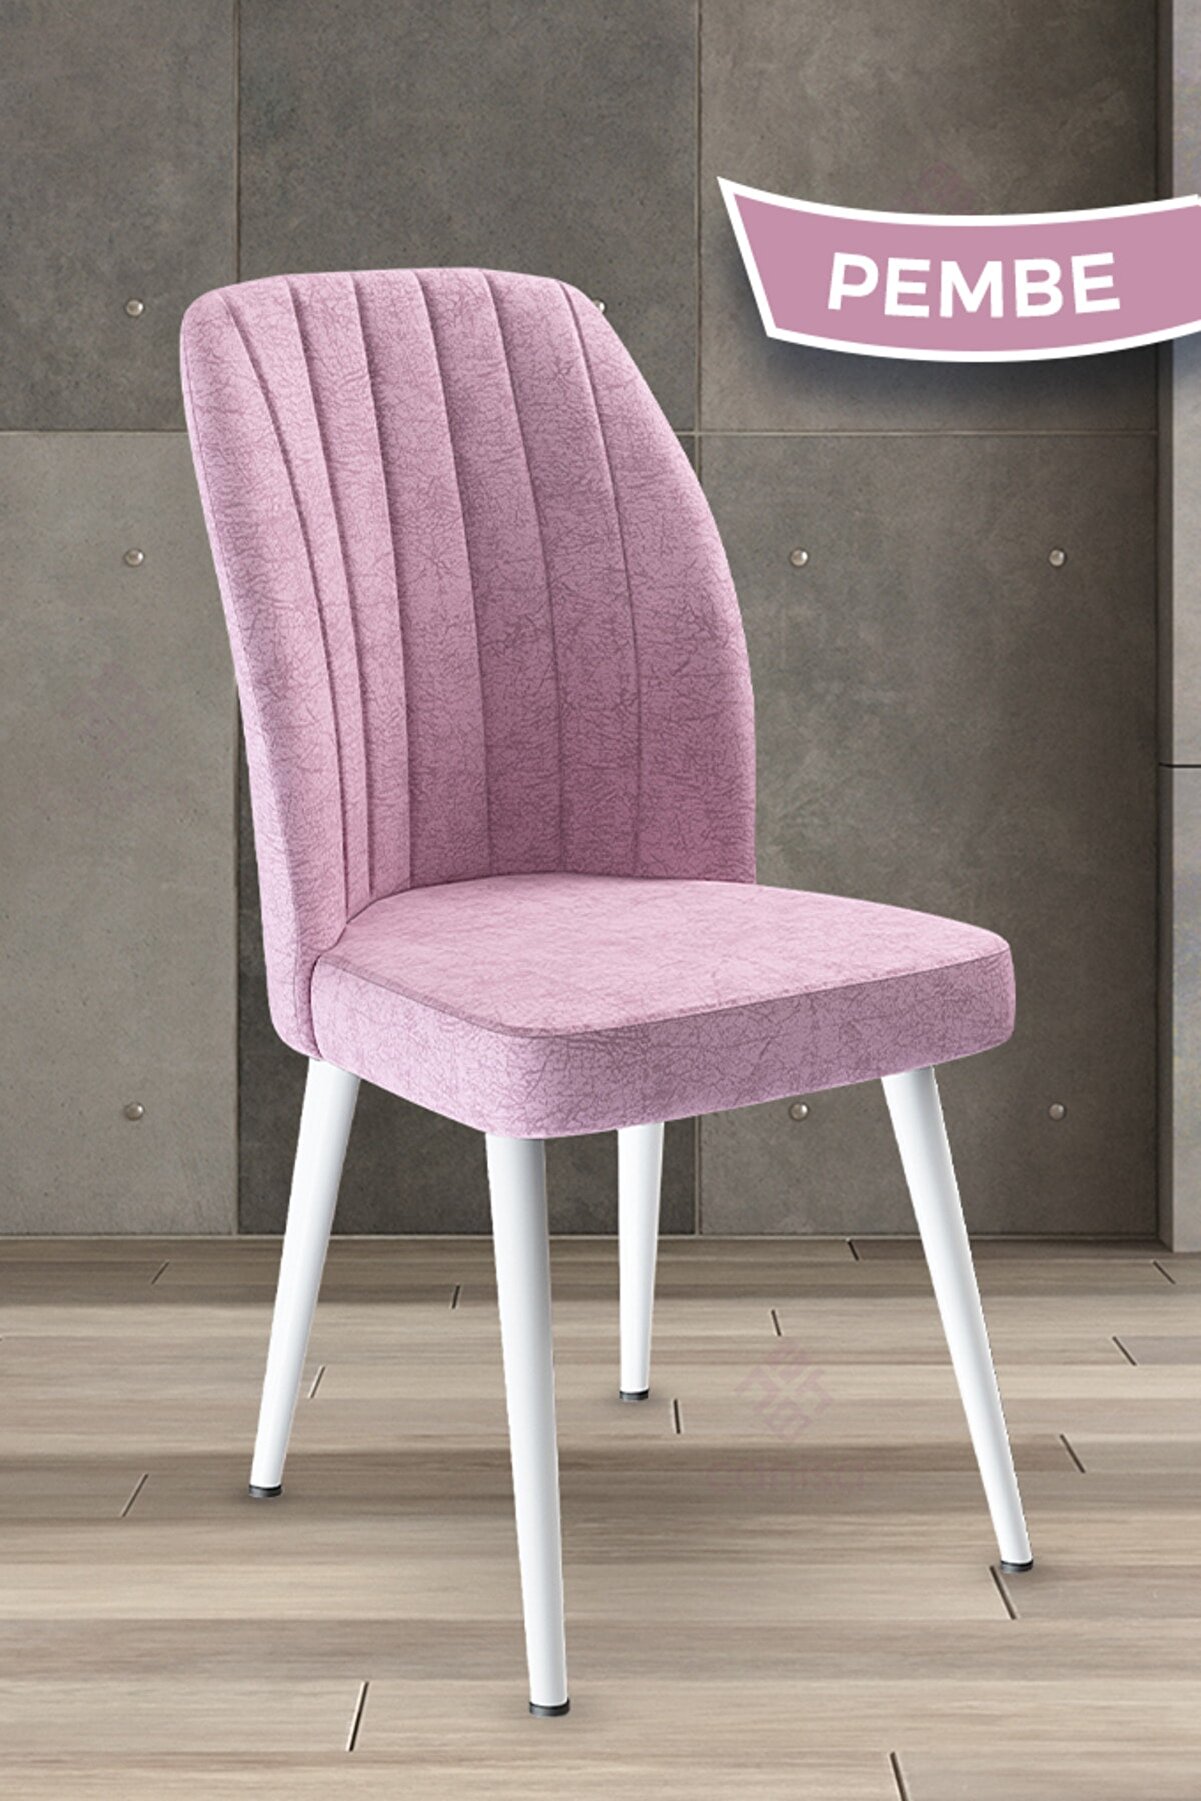 Canisa Concept Platinum Serisi Pembe Renk Sandalye -ayakları Beyaz 1.sınıf Mutfak Sandalyesi Silinebilir Kumaş